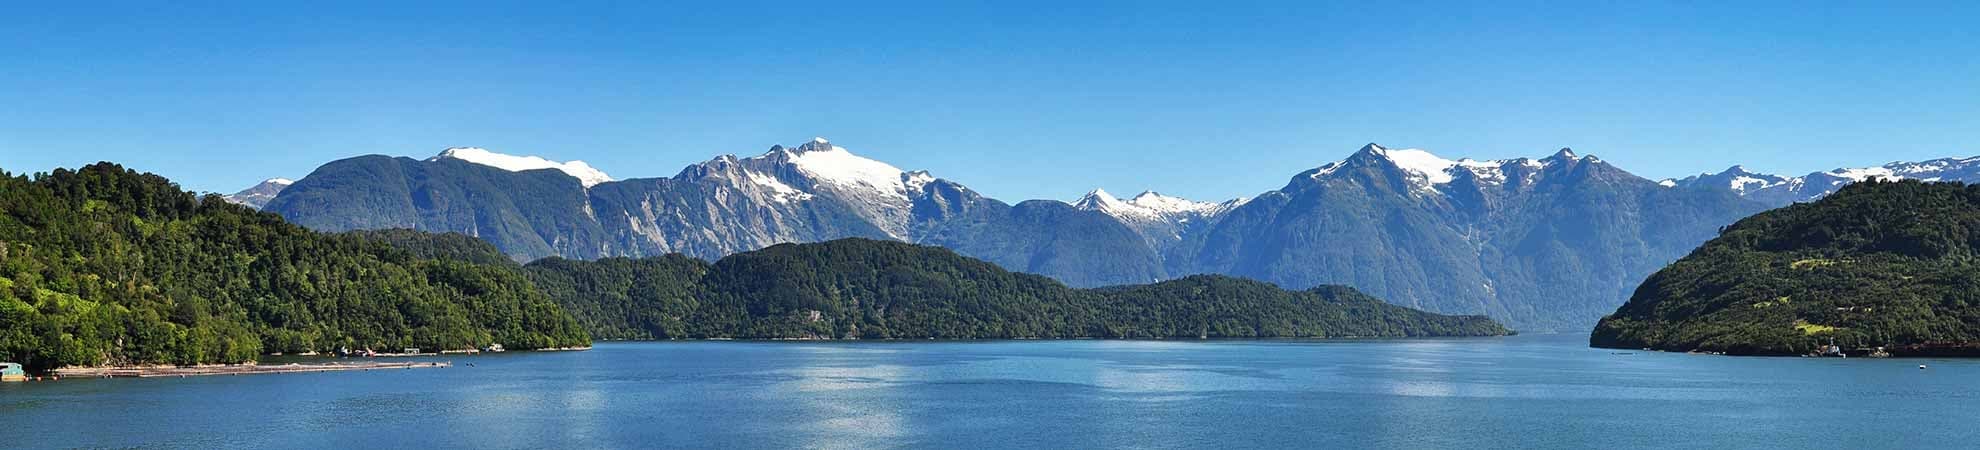 Voyage La région des lacs au Chili